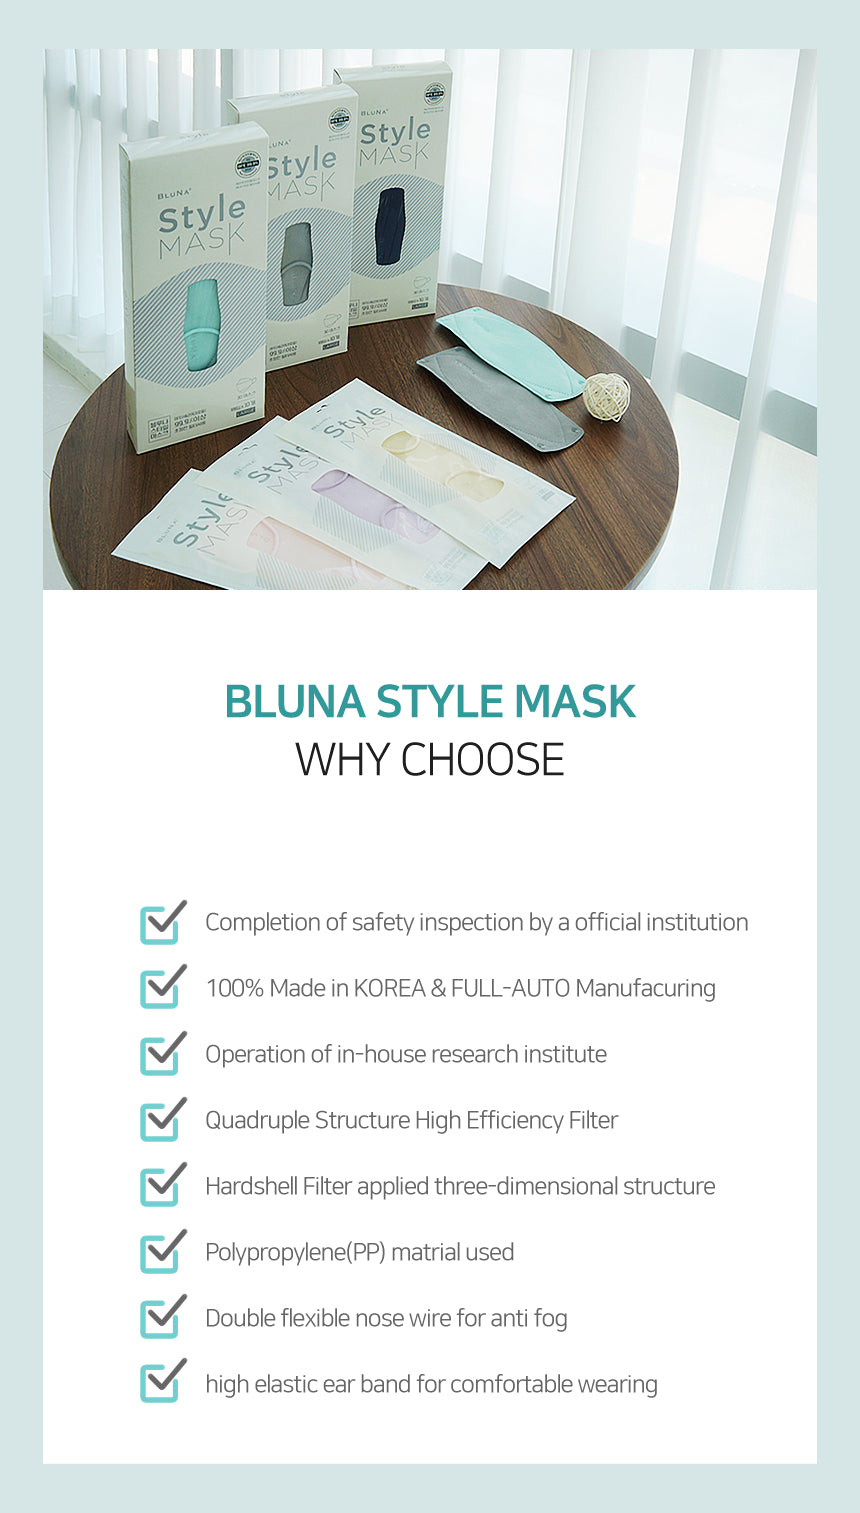 BLUNA 3D Adult Style Mask, Rose Colour, BFE 99.9%